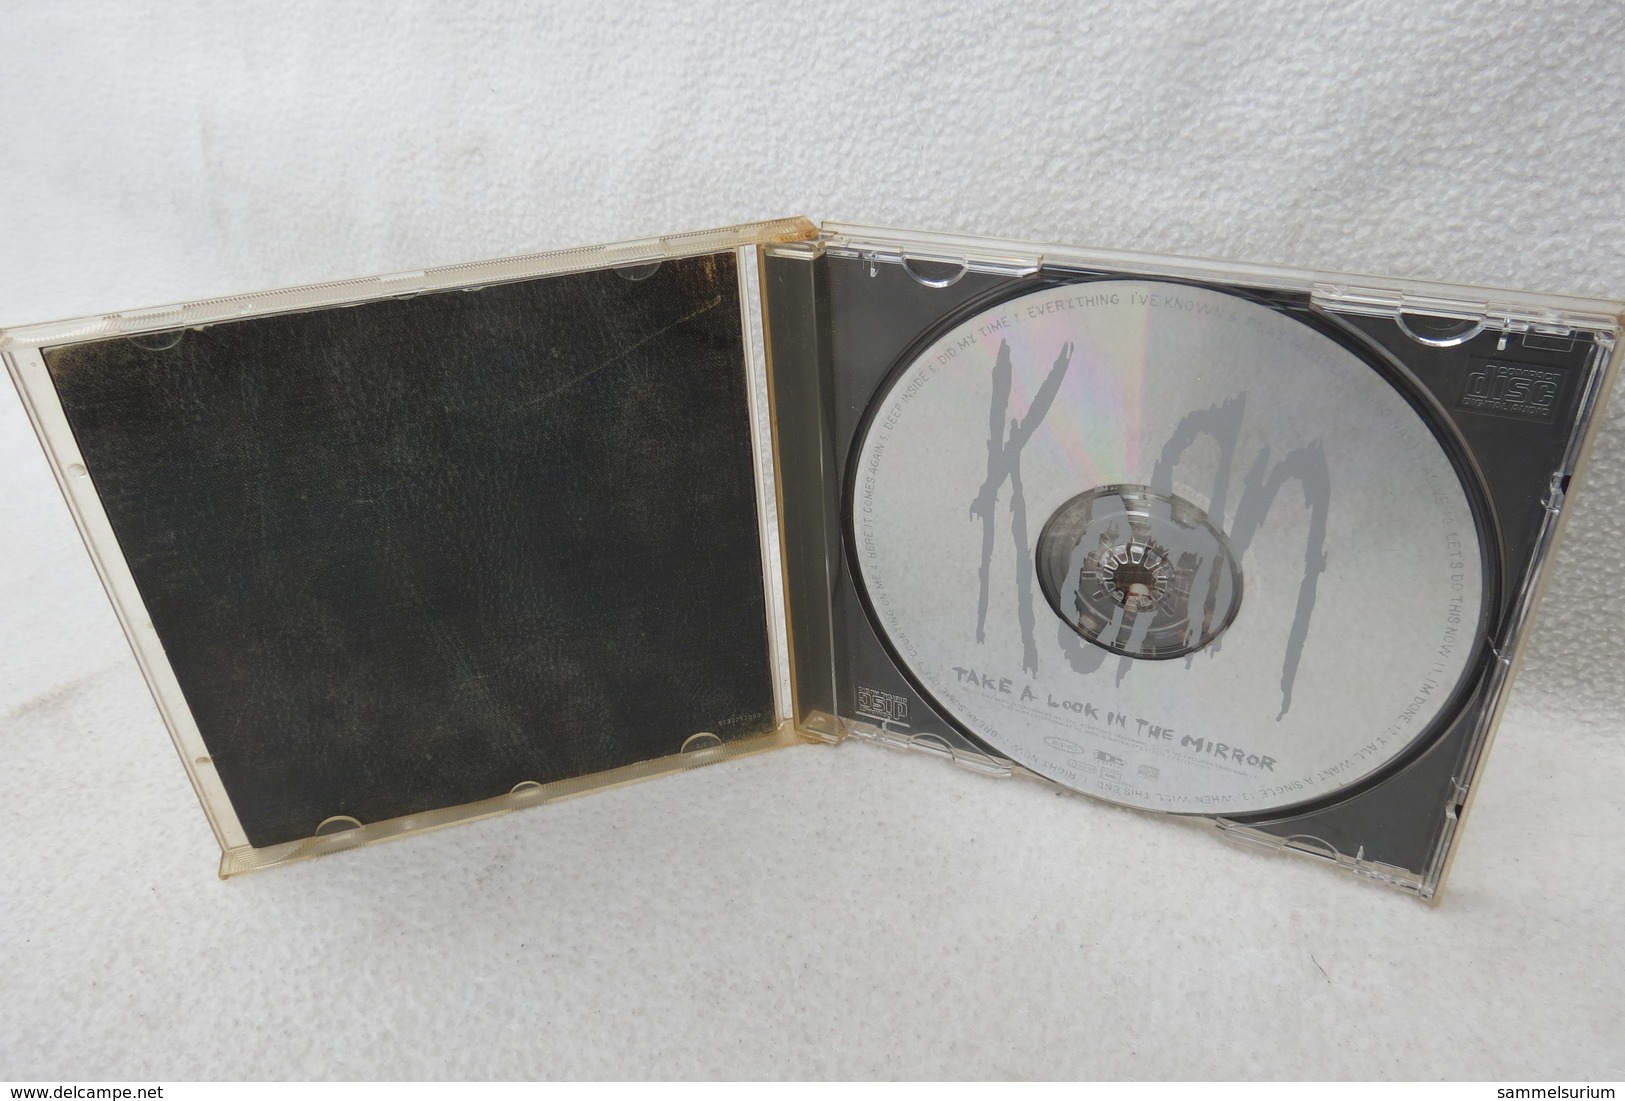 CD "Korn" Take A Look In The Mirror - Hard Rock & Metal